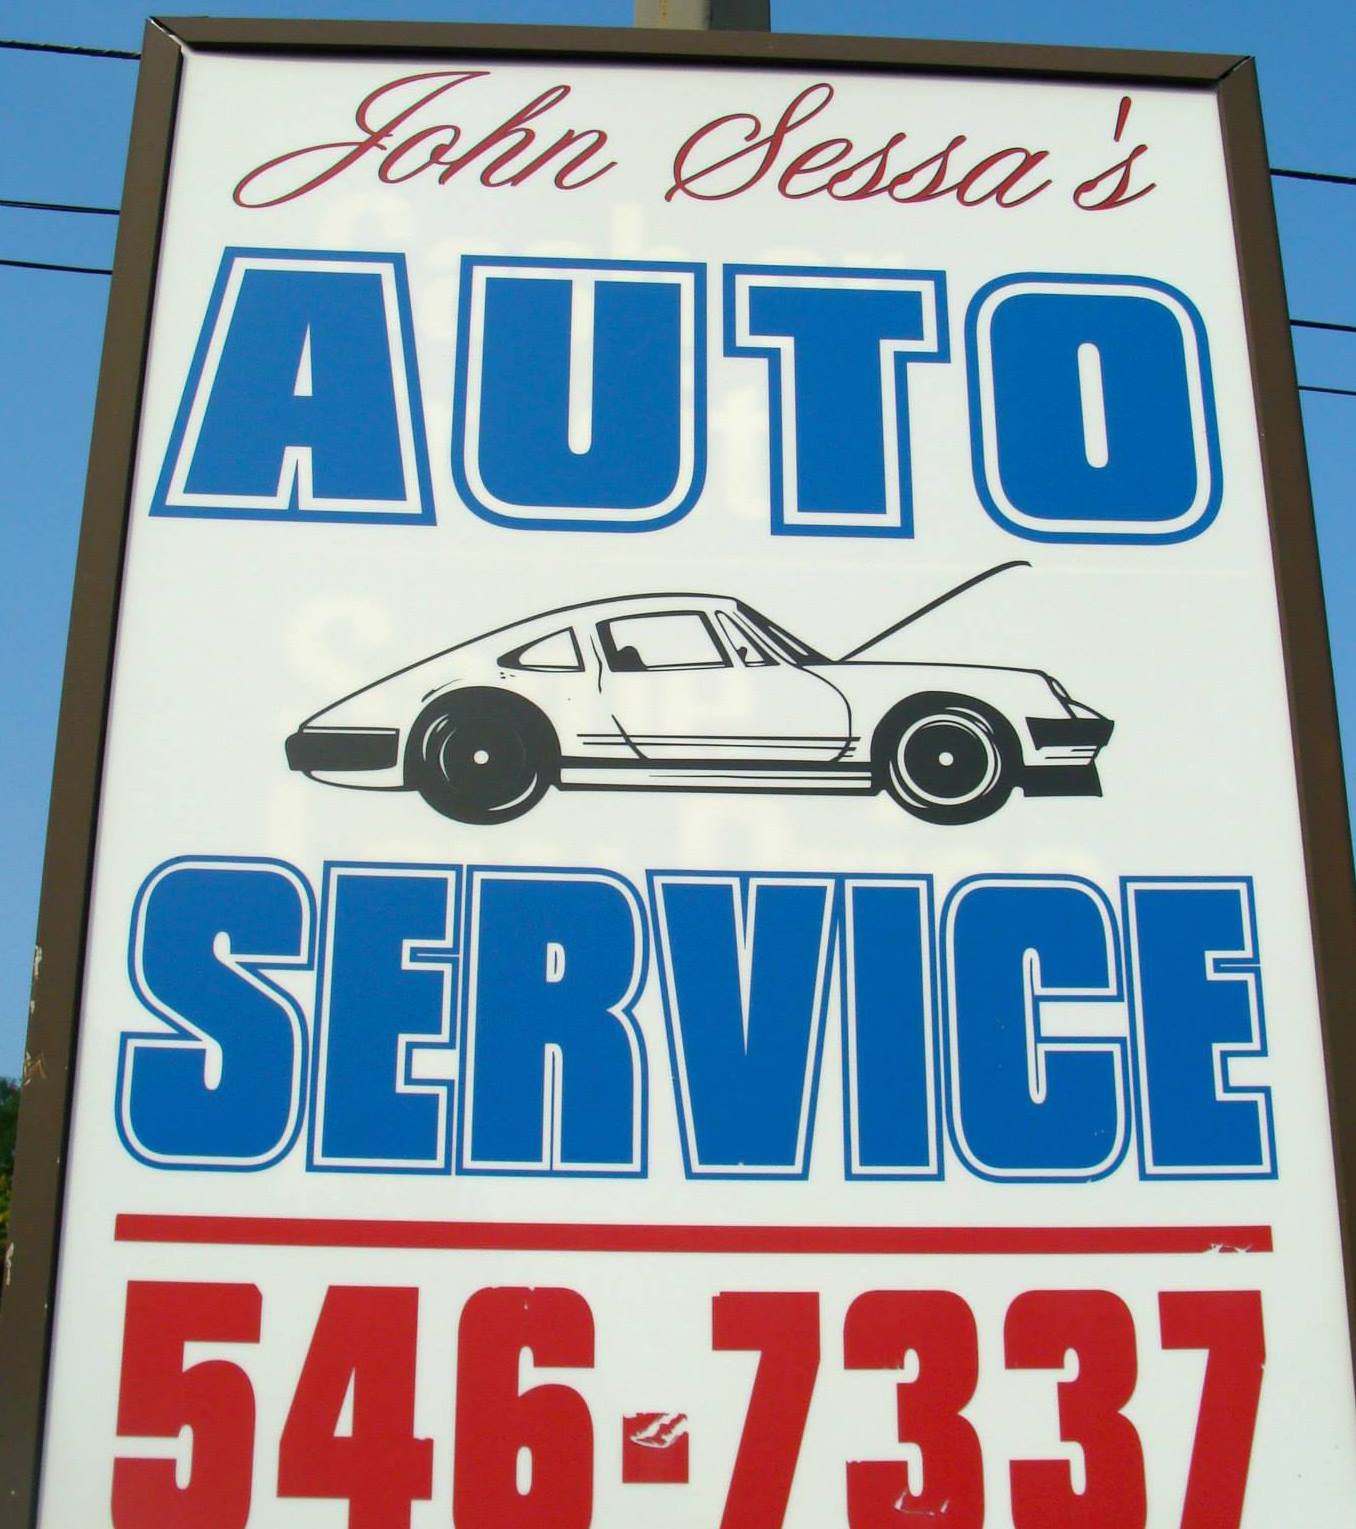 John Sessa's Auto Service